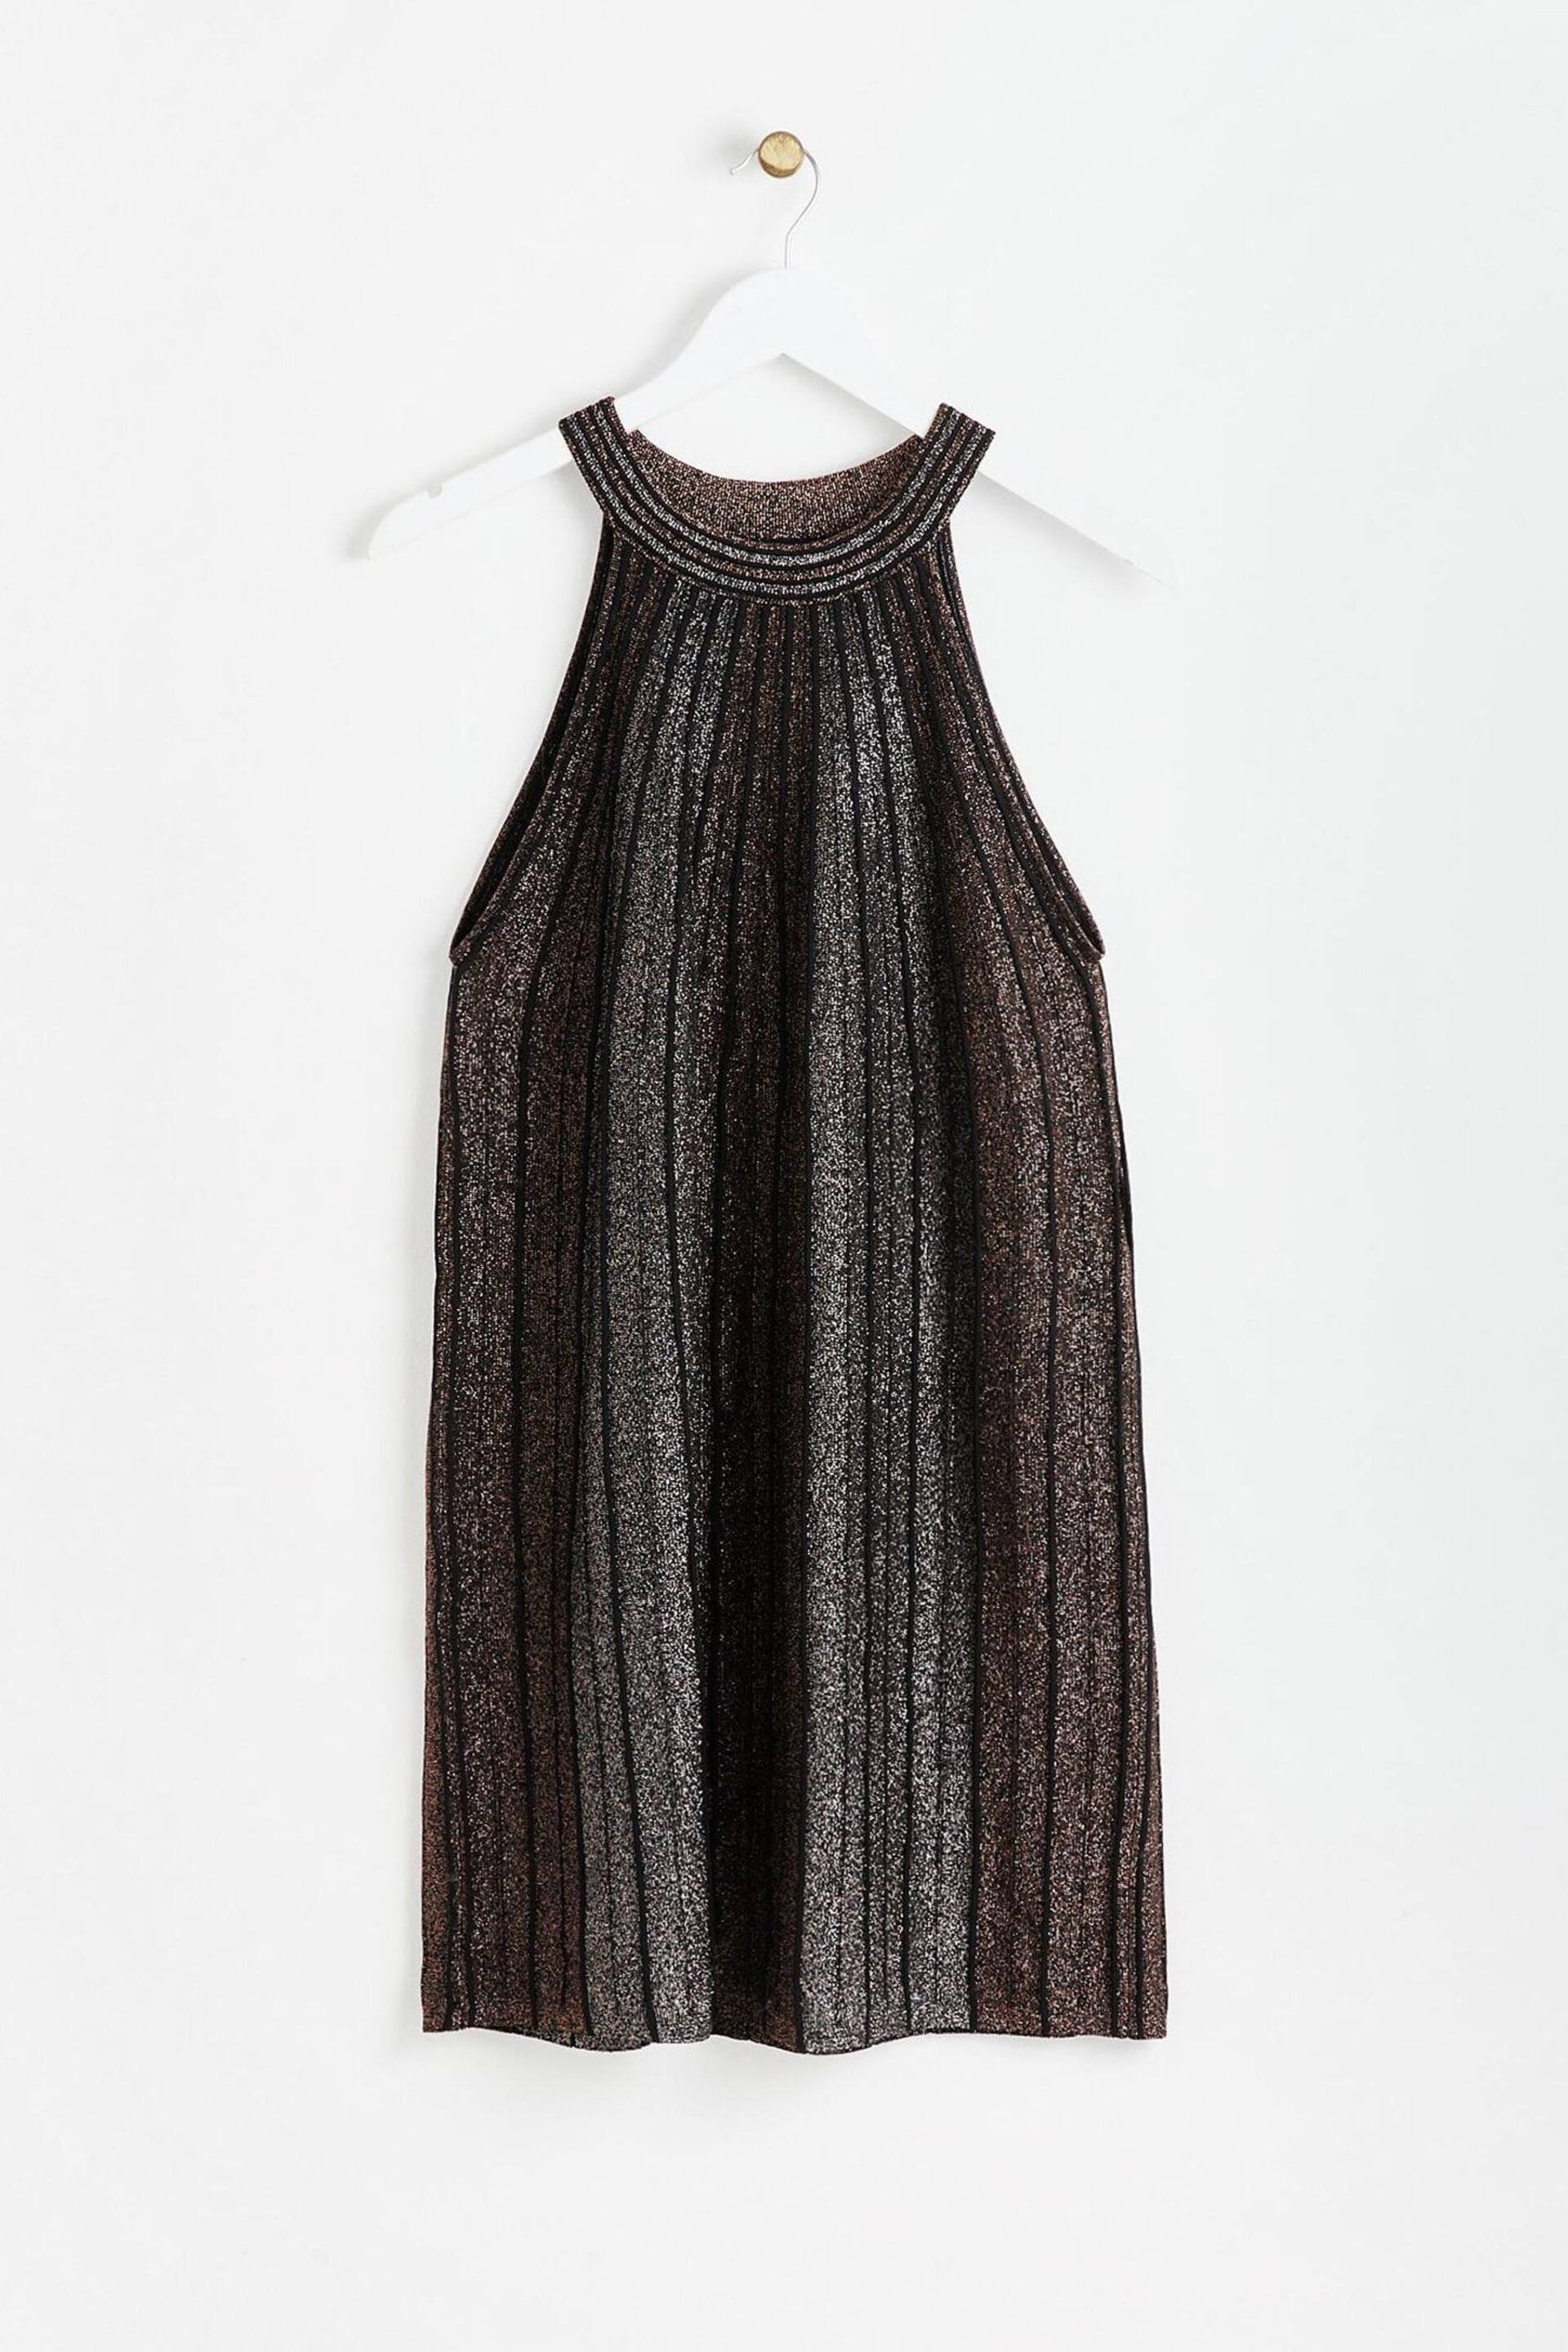 Oliver Bonas Black Sparkle Stripe Copper Halter Neck Shift Dress - Image 4 of 8